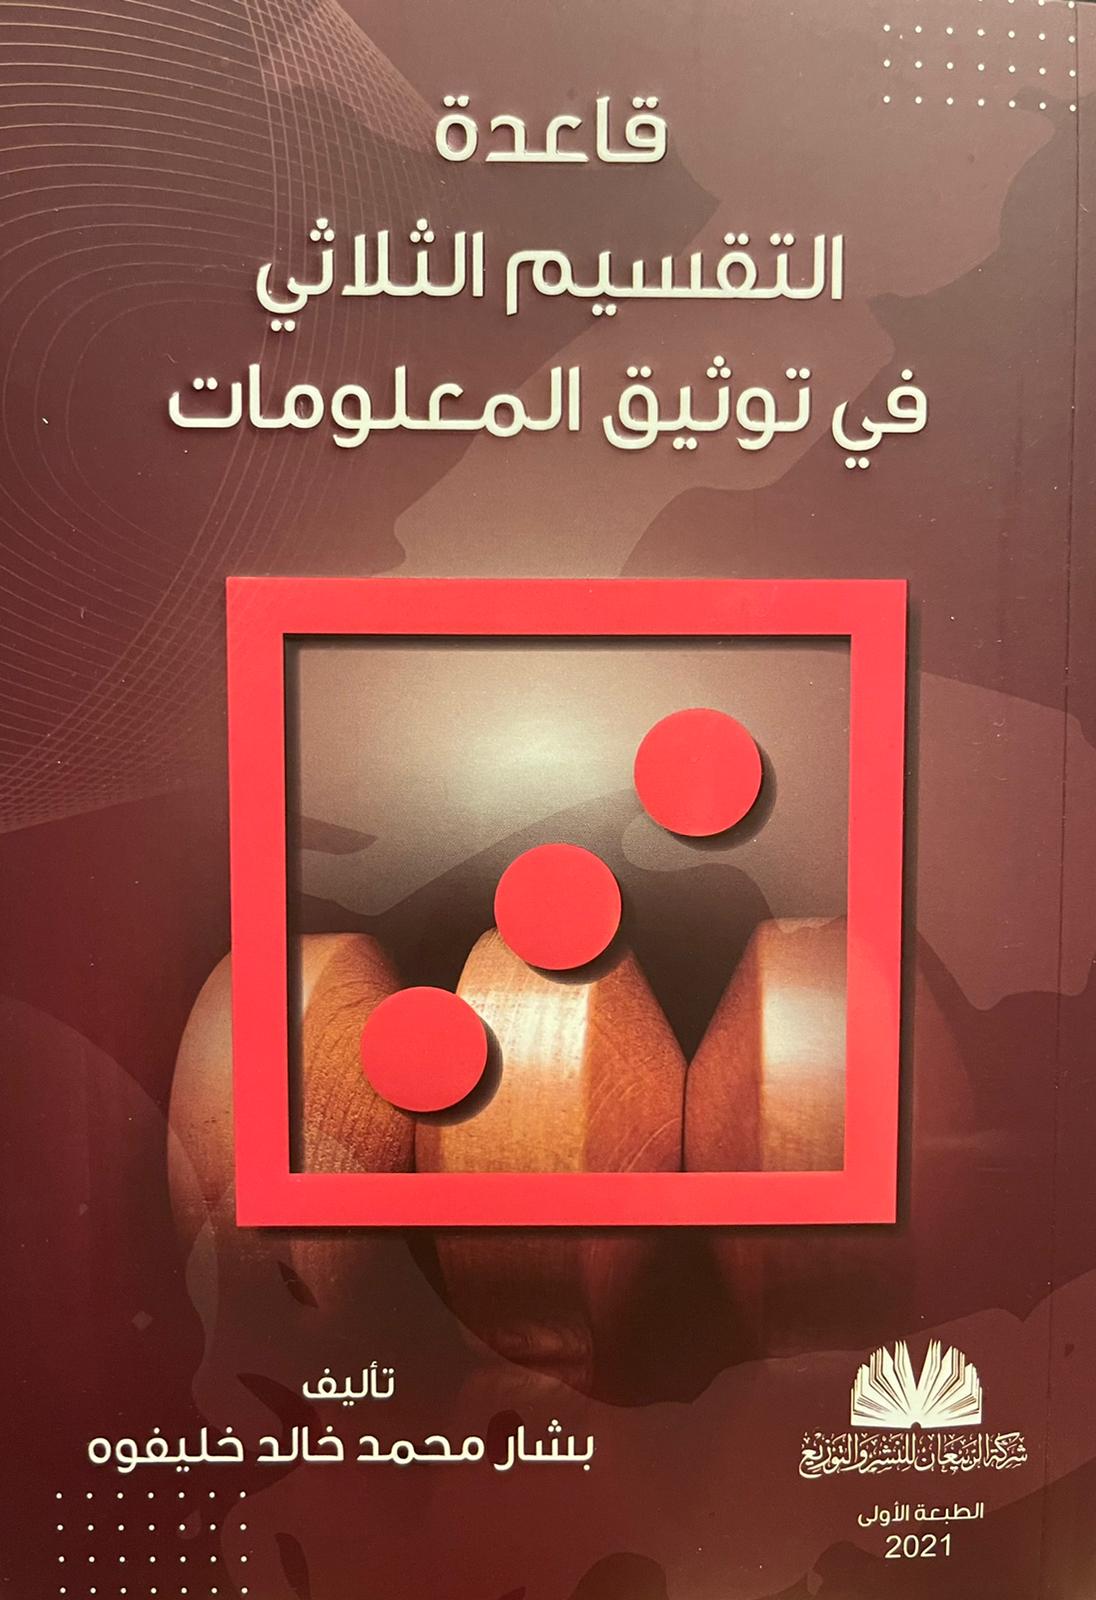 الباحث والمؤرخ الكويتي الأستاذ بشار محمد خالد خليفوه يصدر كتابا جديدا